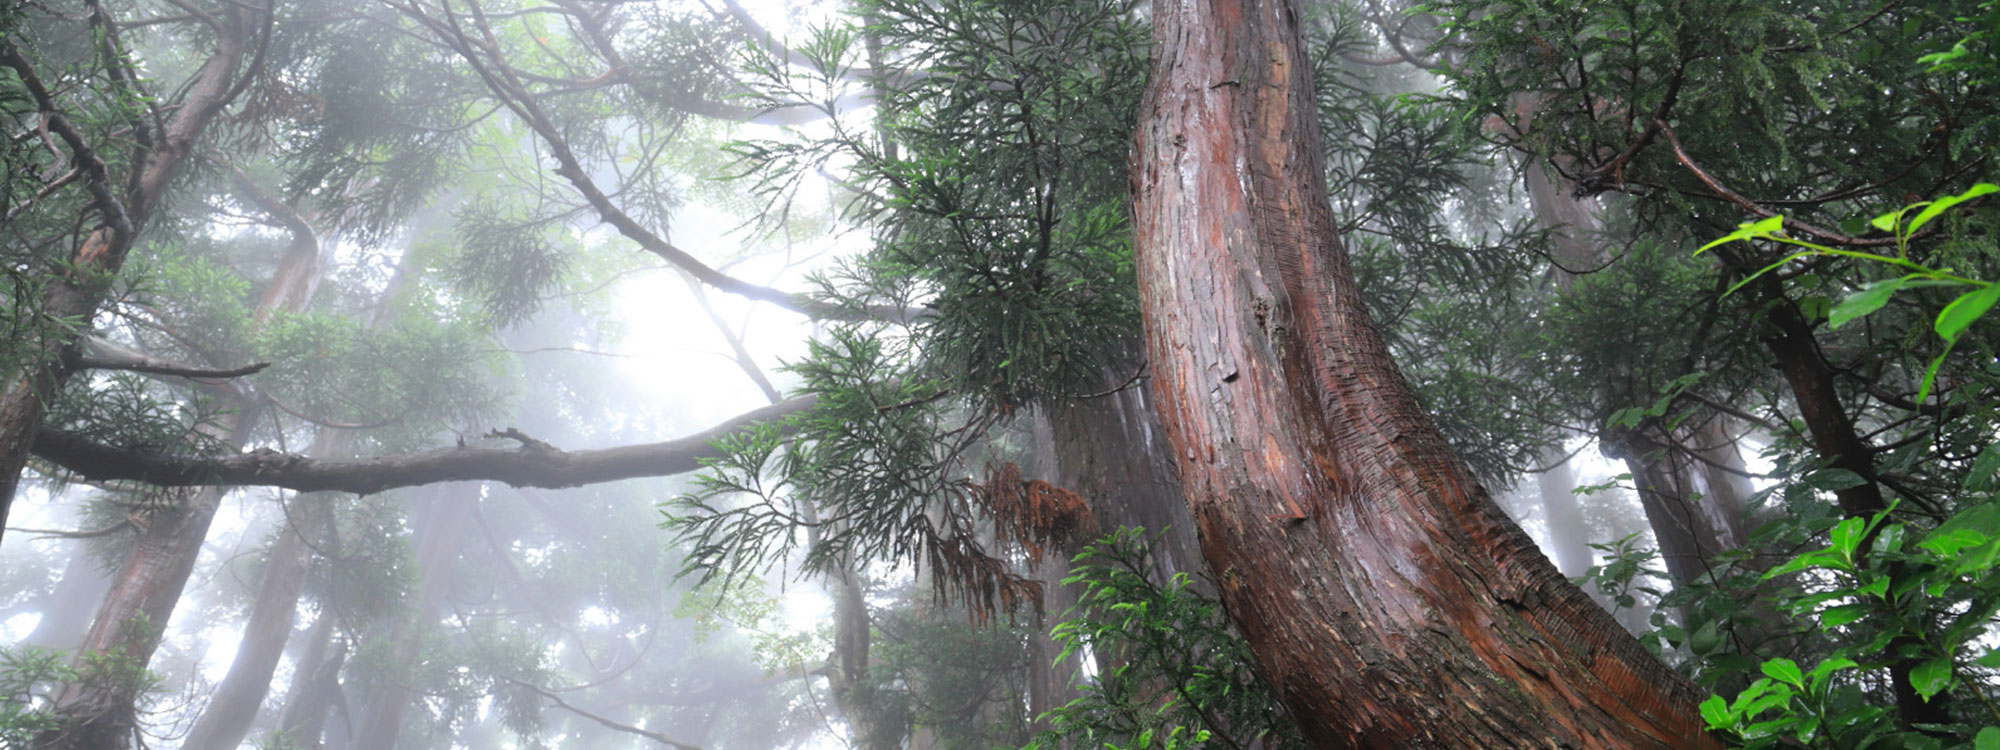 個性あふれる天然杉の原⽣林